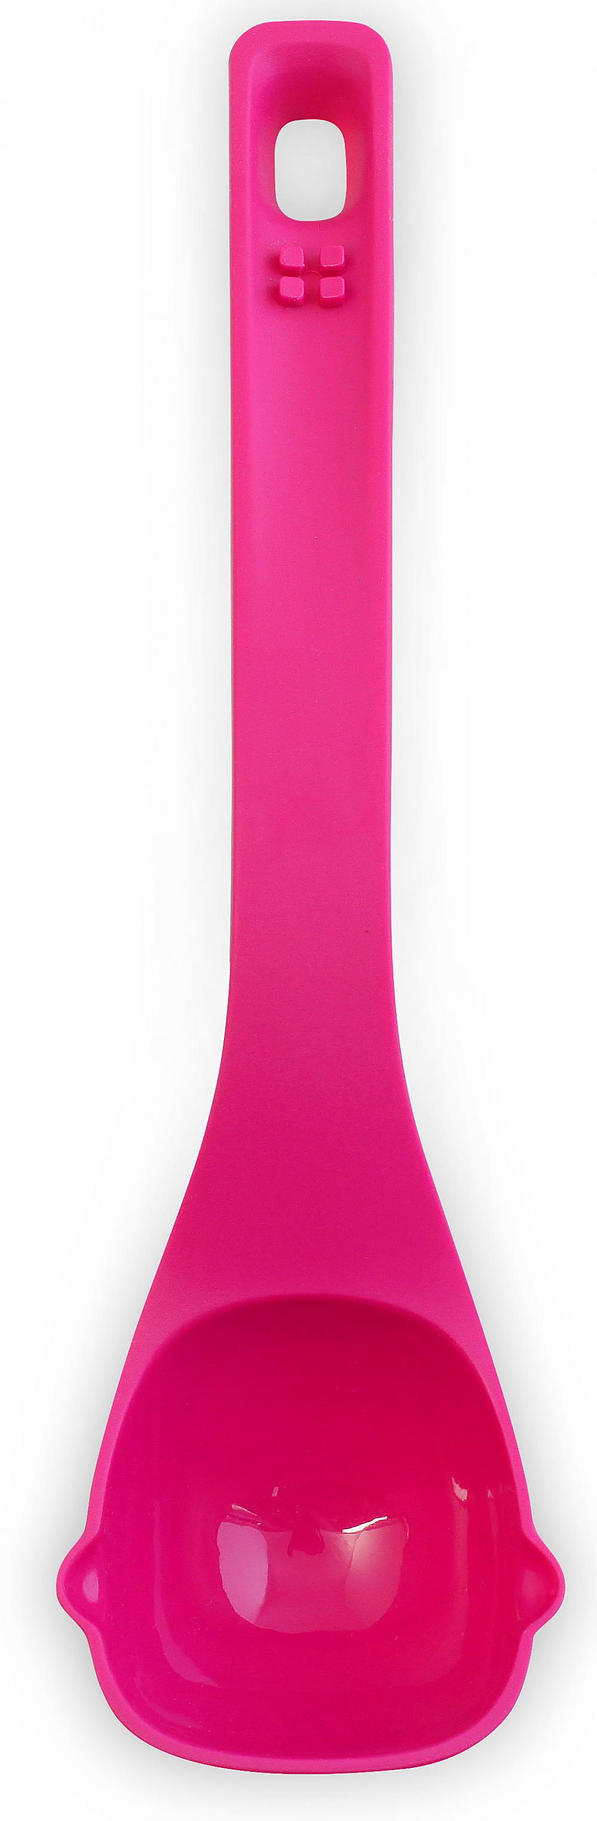 VIALLI DESIGN Colori 30 cm różowa - chochla / łyżka wazowa nylonowa